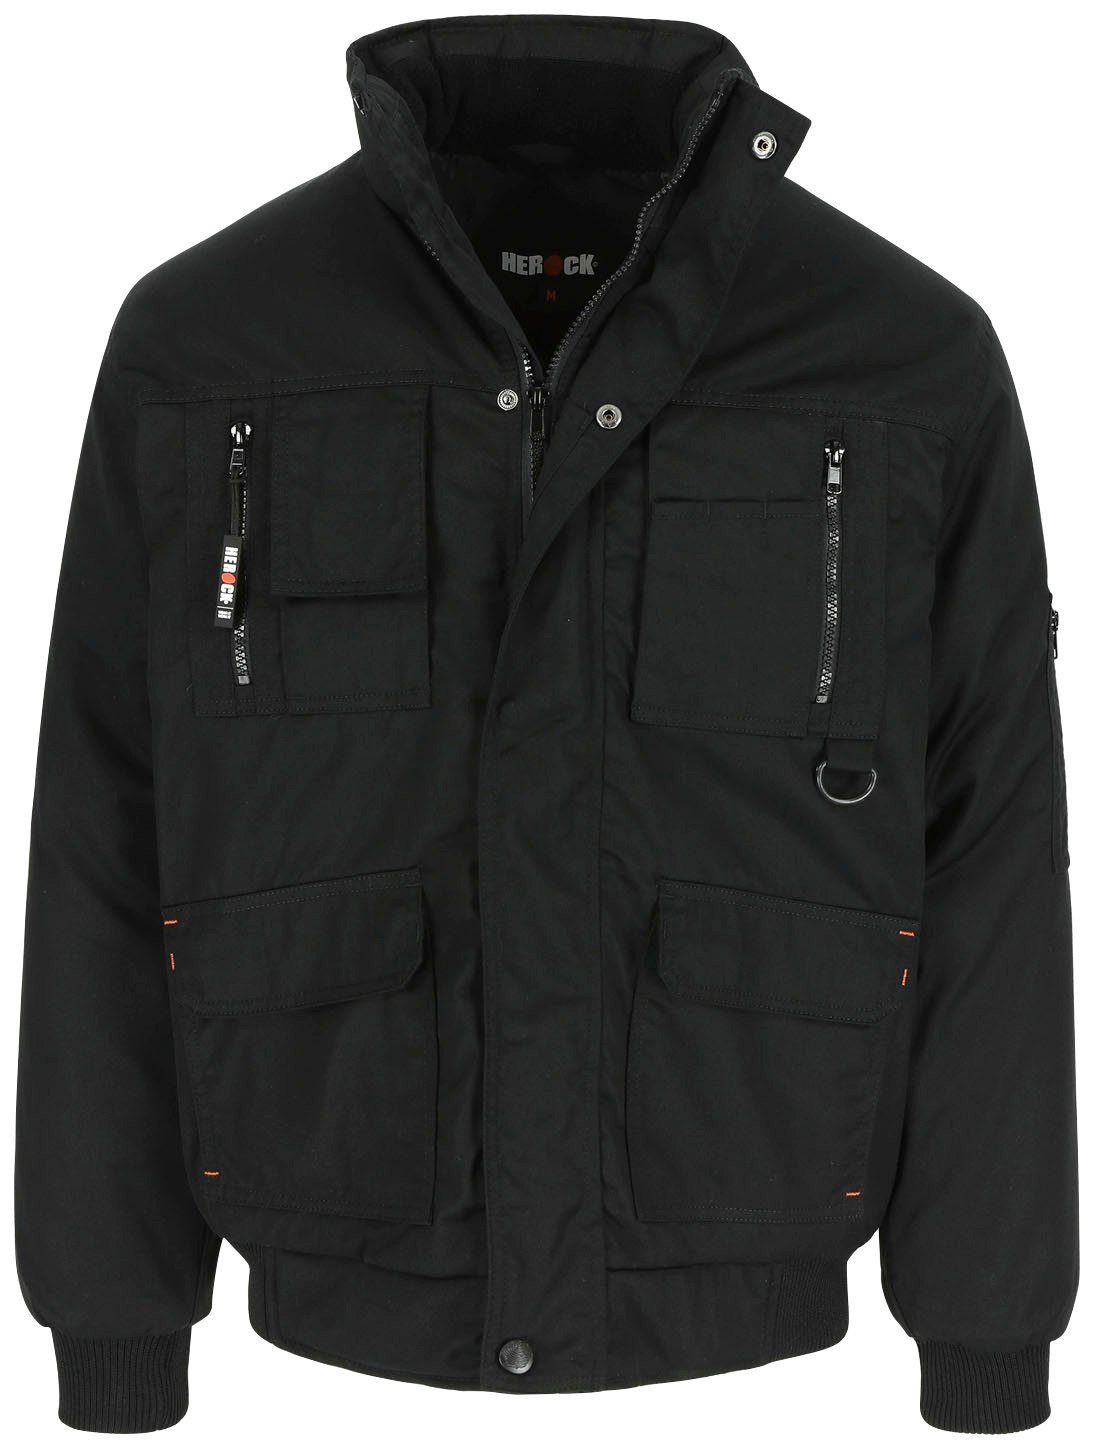 Herock Arbeitsjacke Typhon Jacke mit viele Farben robust, Wasserabweisend schwarz viele Fleece-Kragen, Taschen